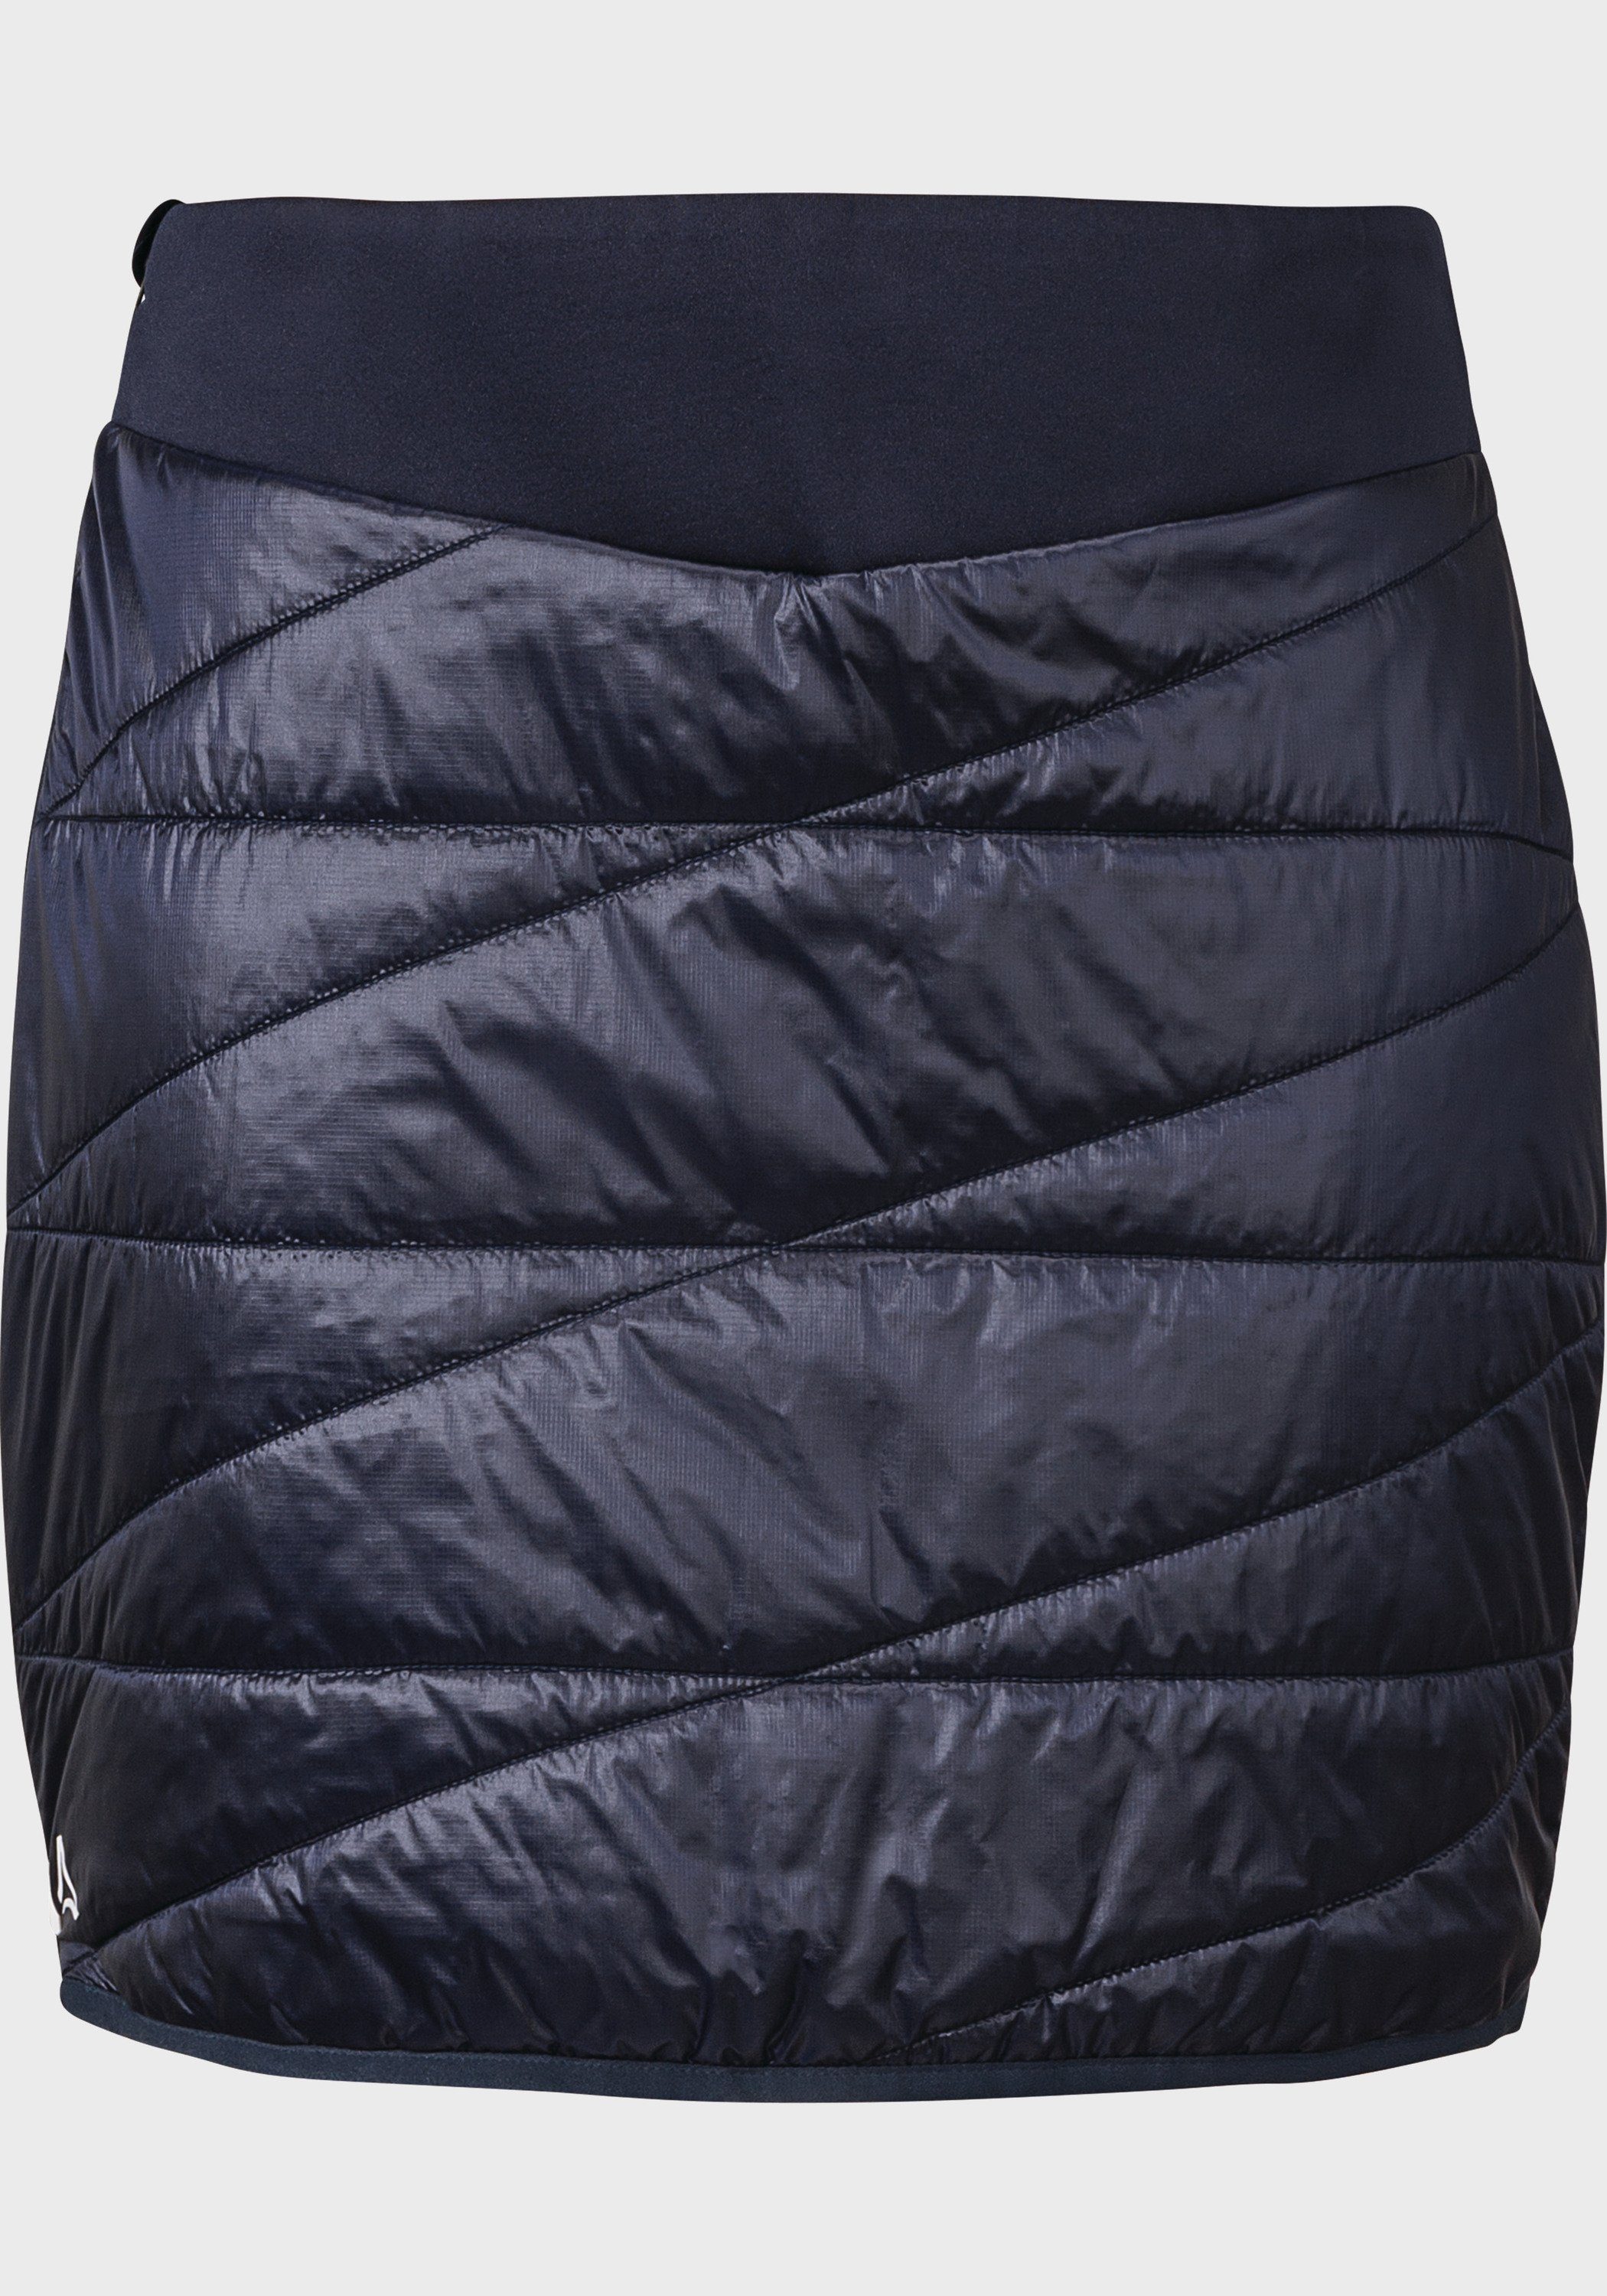 Schöffel Sweatrock Thermo Skirt Stams L, 4D BODY MAPPING - maximale  Bewegungsfreiheit, optimales Körperklima